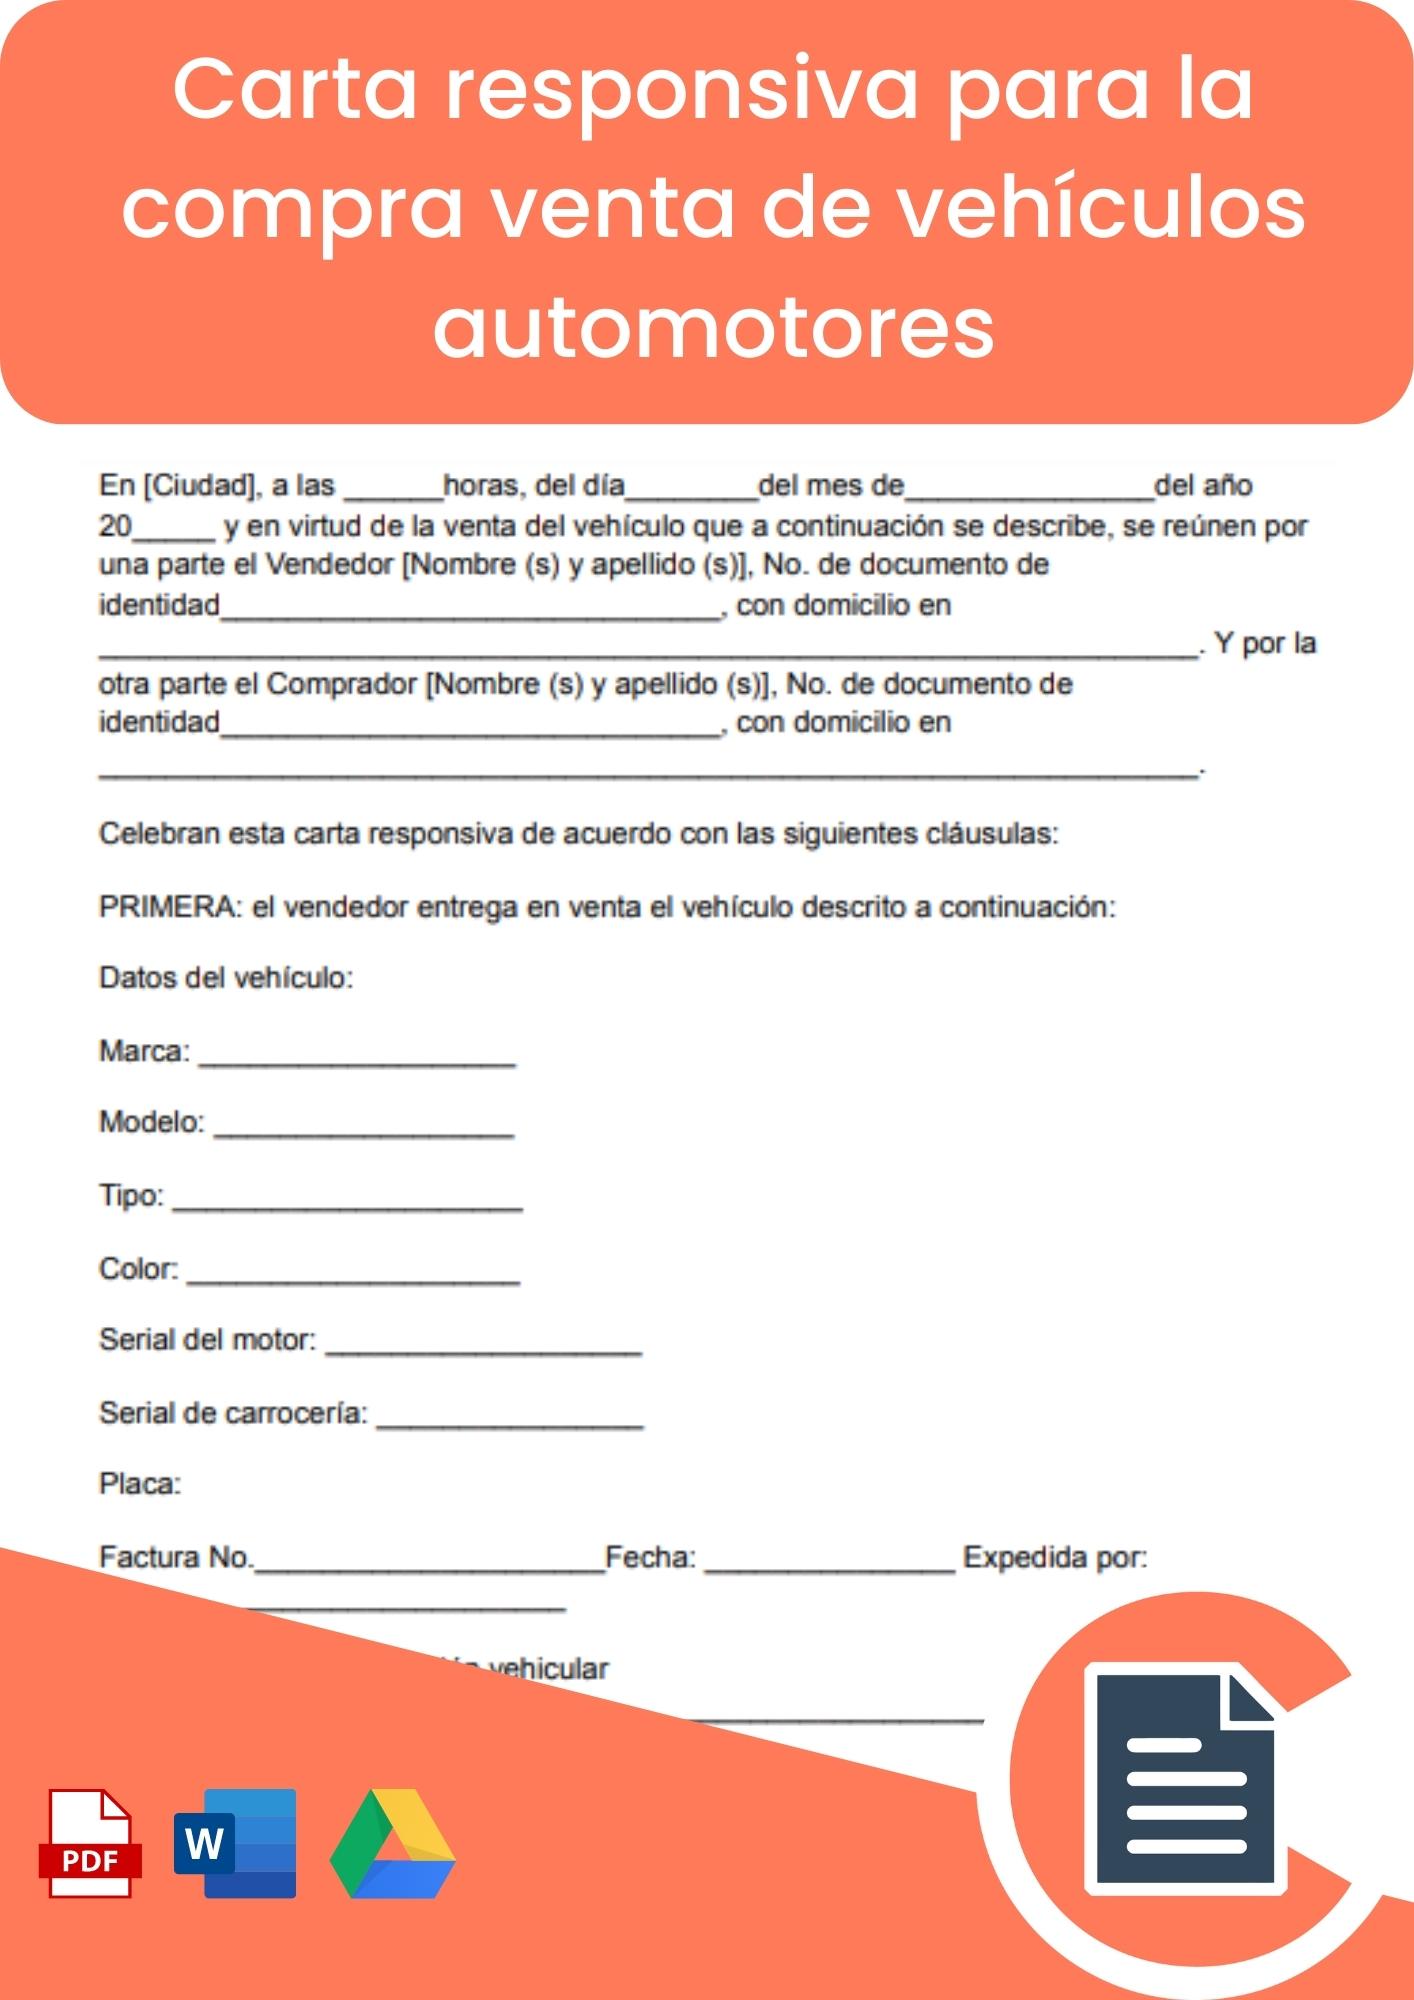 Carta responsiva para la compraventa de vehiculos automotores